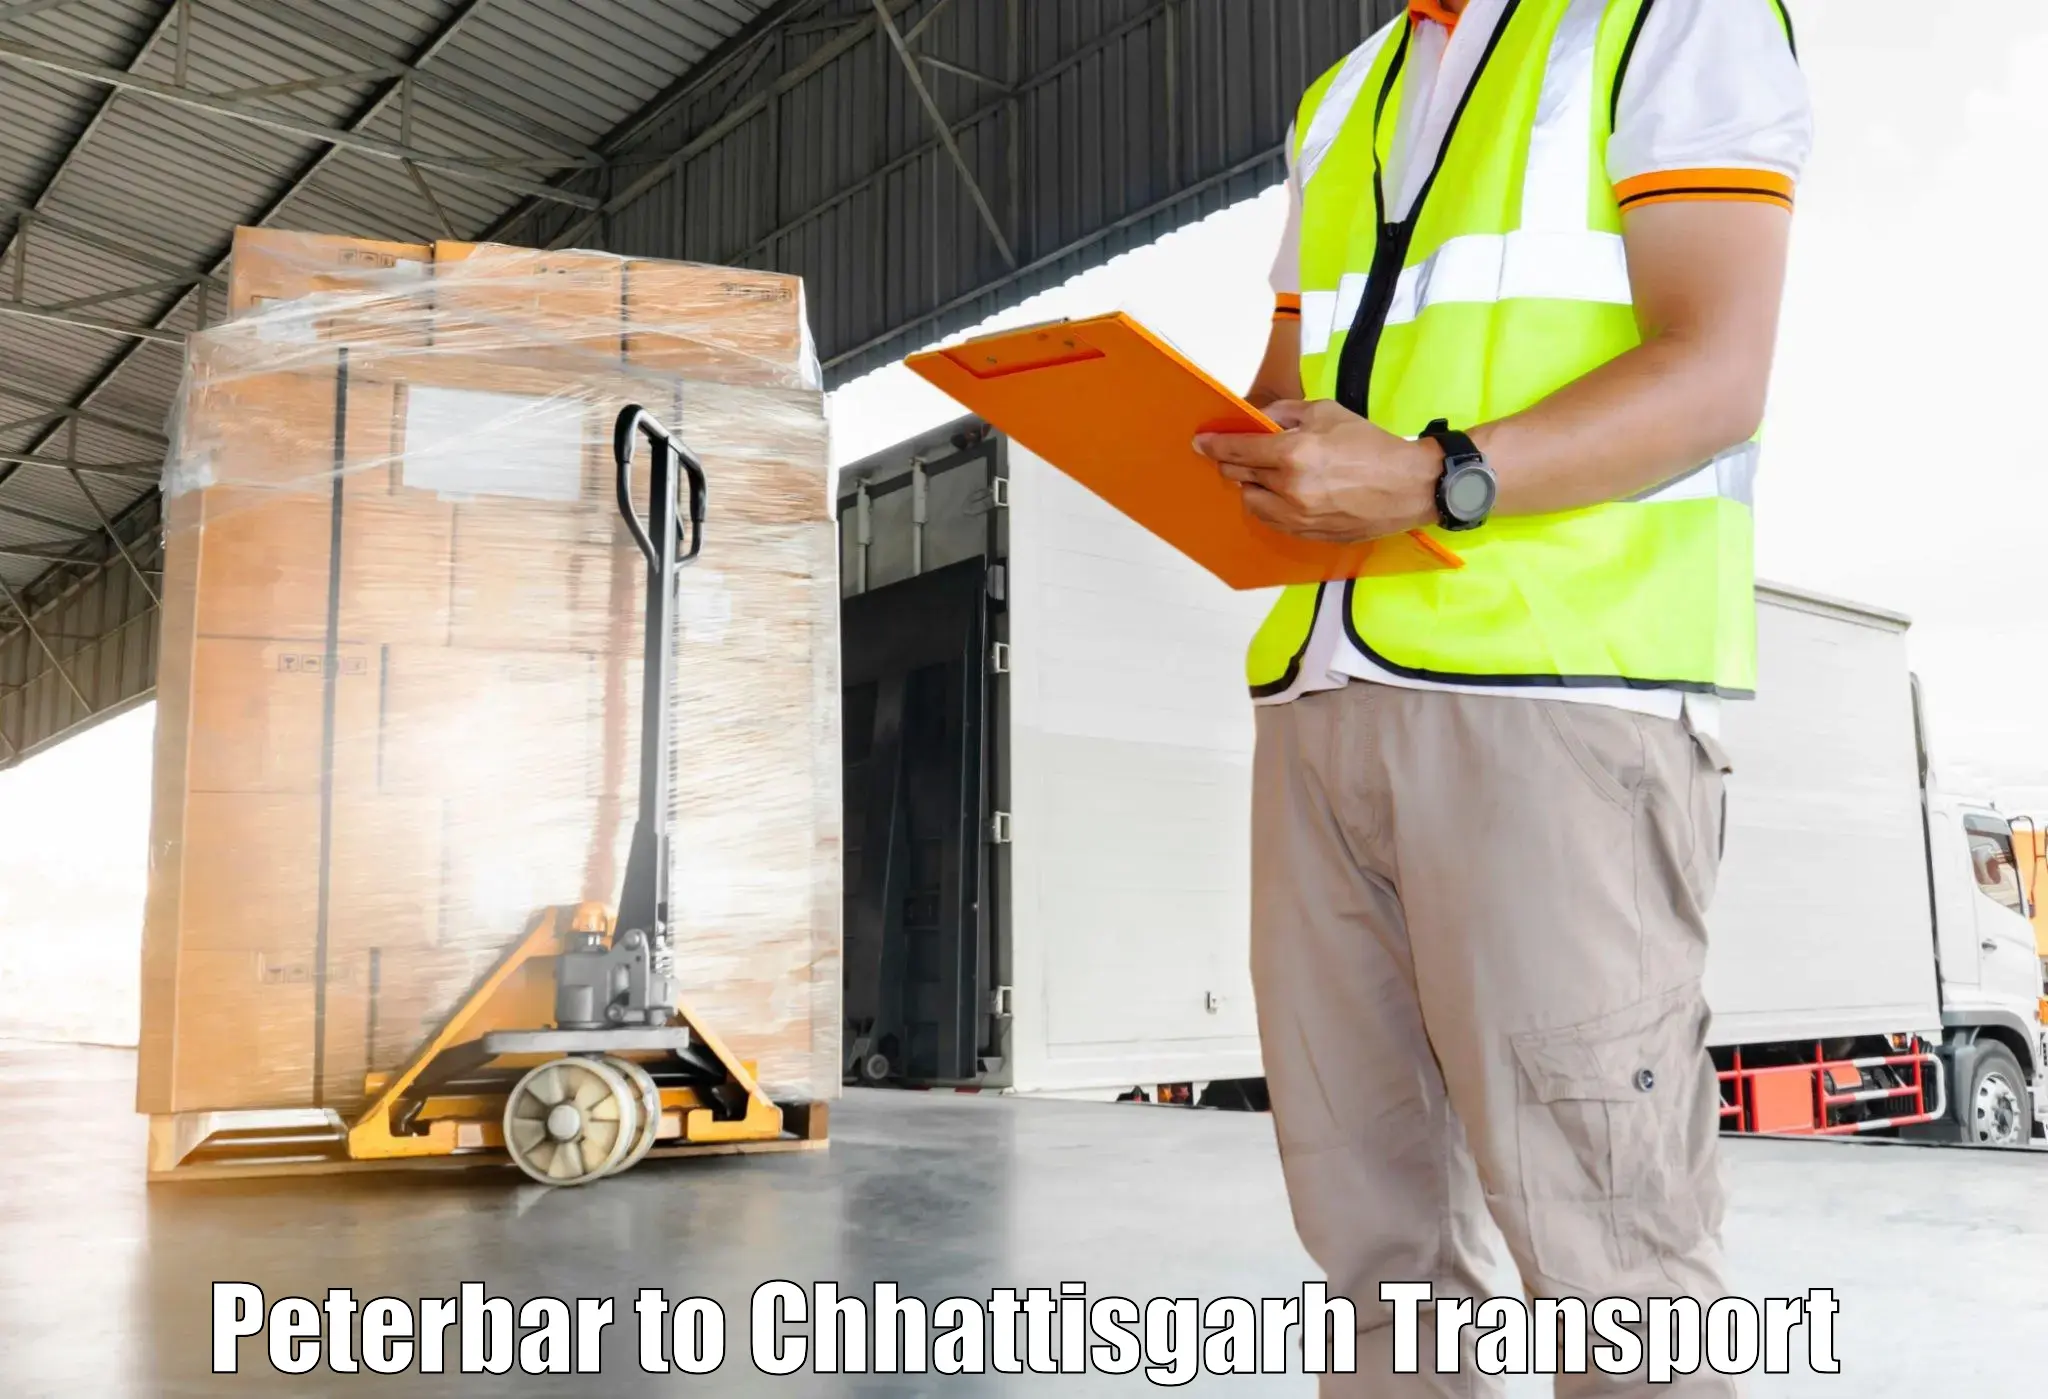 Furniture transport service Peterbar to Dongargarh